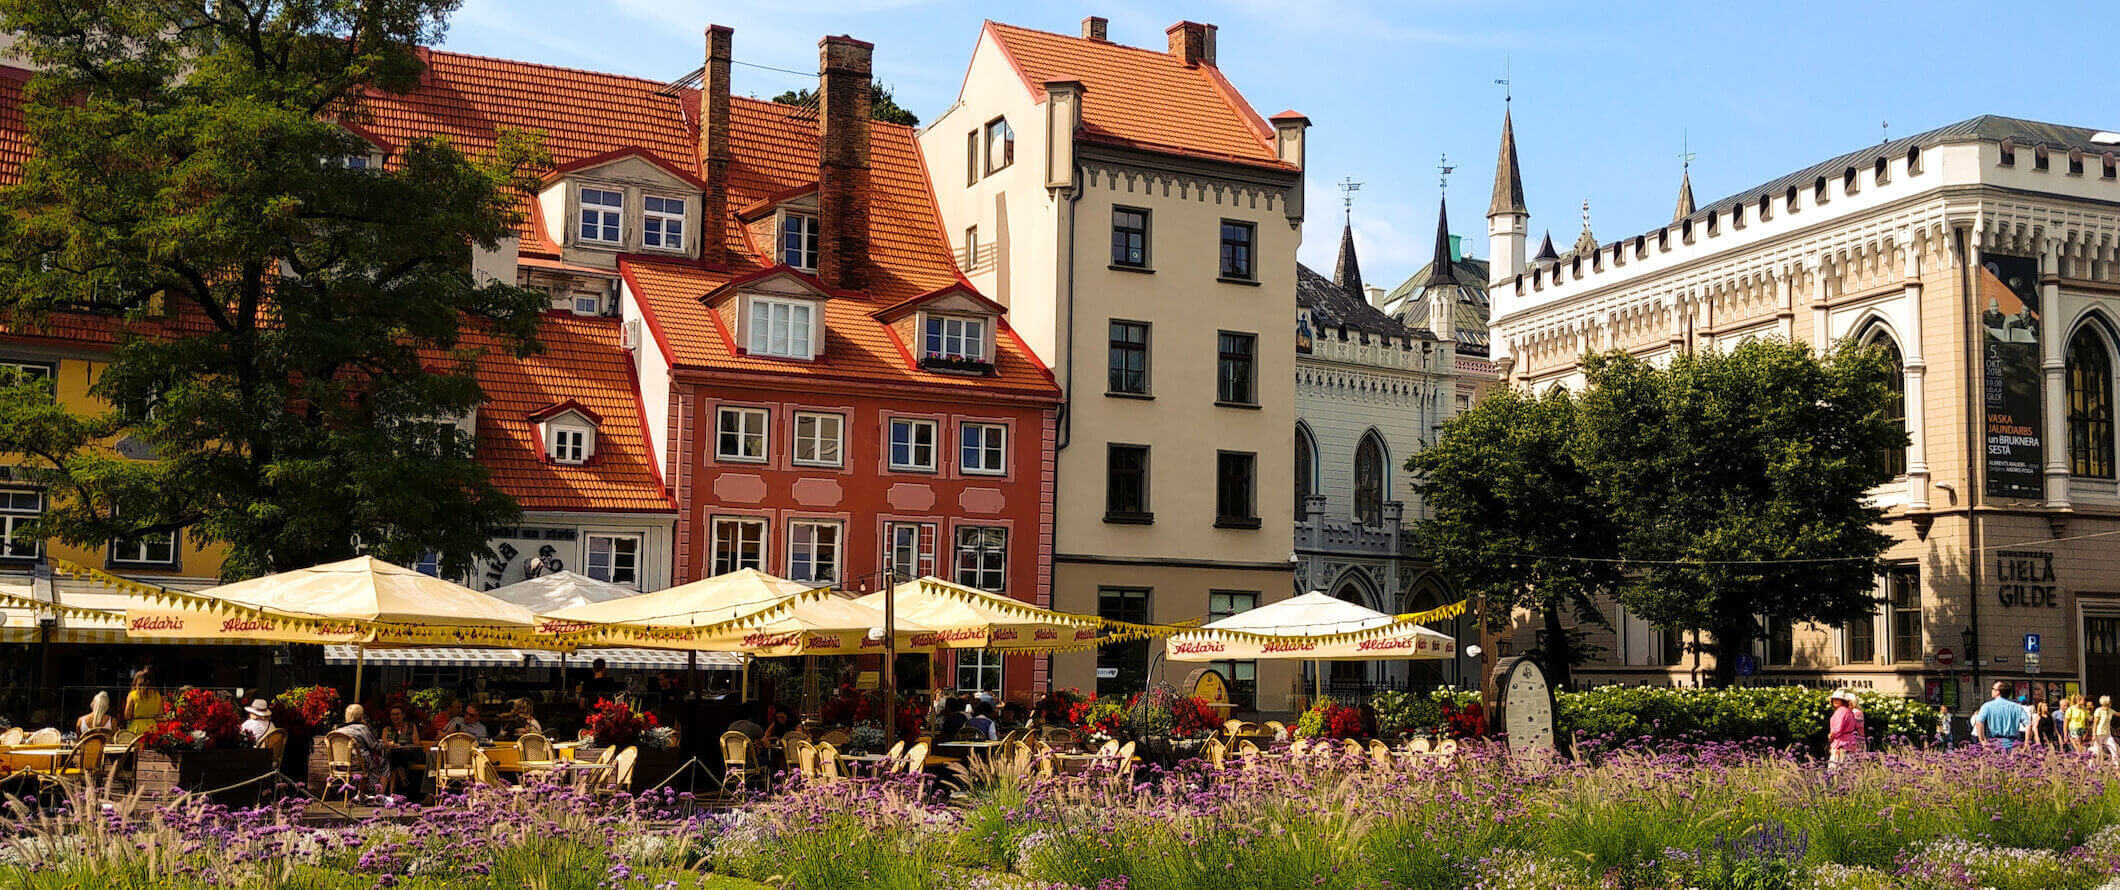 Velhos edifícios coloridos na encantadora cidade de Riga, a capital da Letônia